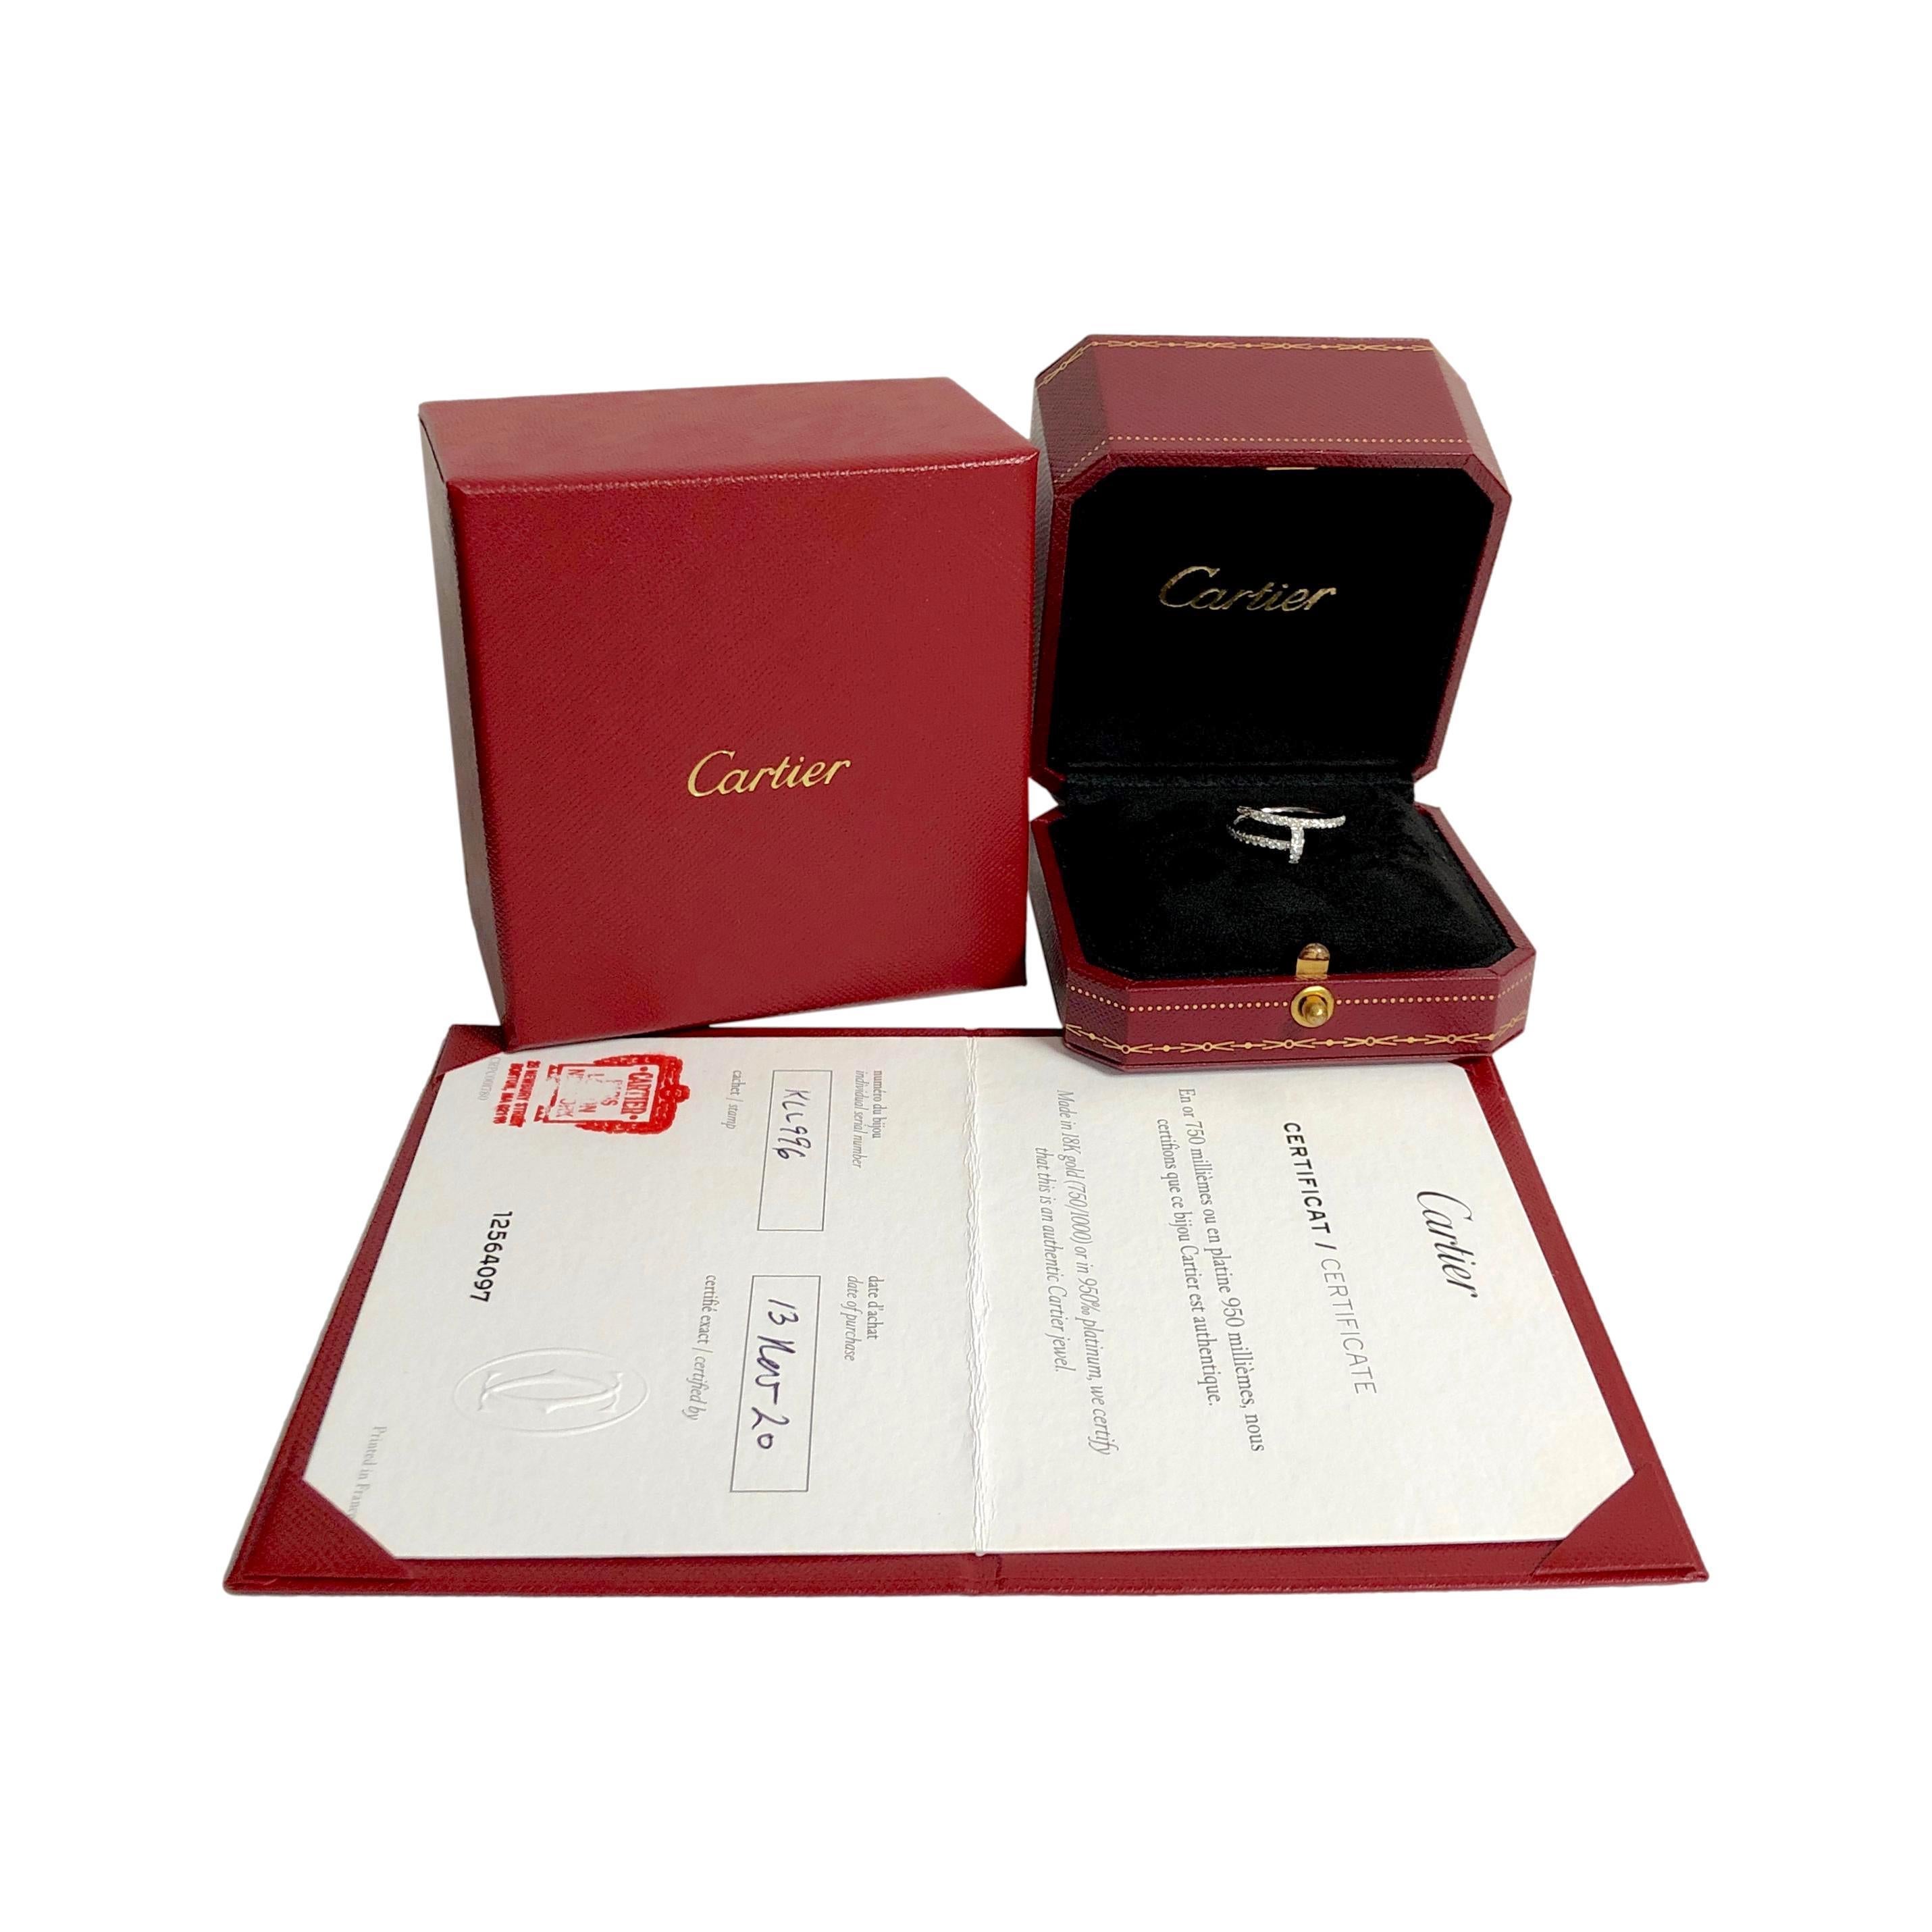 Cartier Juste Un Clou 18K White Gold Pave Diamond Ring Size EU48/US4.5 For Sale 5